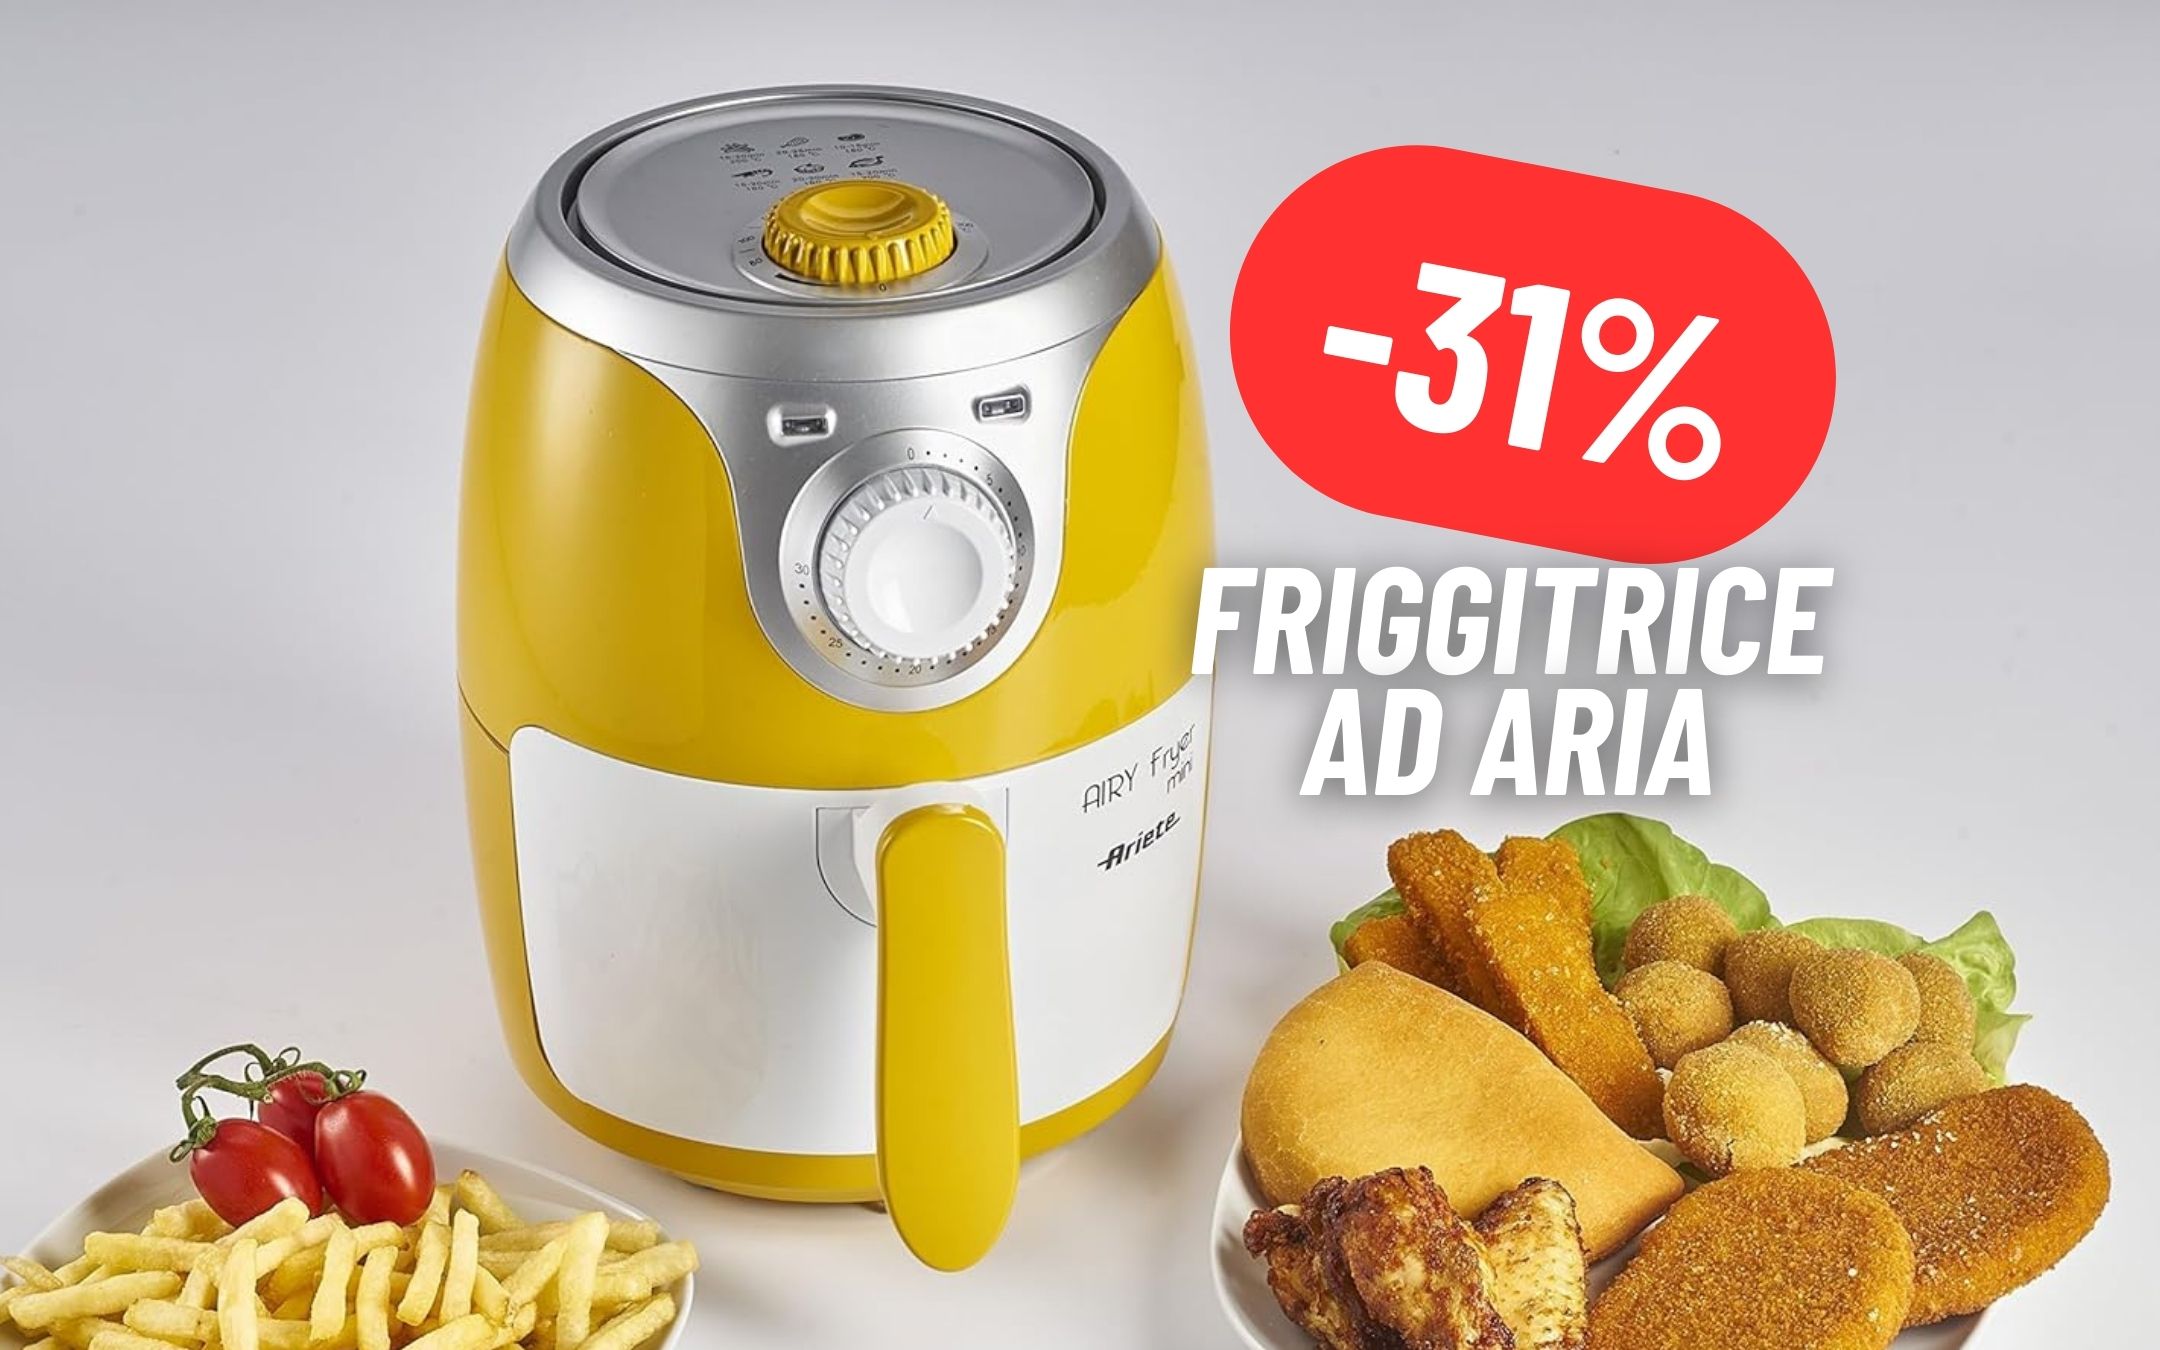 La friggitrice ad aria perfetta per le piccole cucine è Ariete ed è in MAXI  SCONTO (-31%)